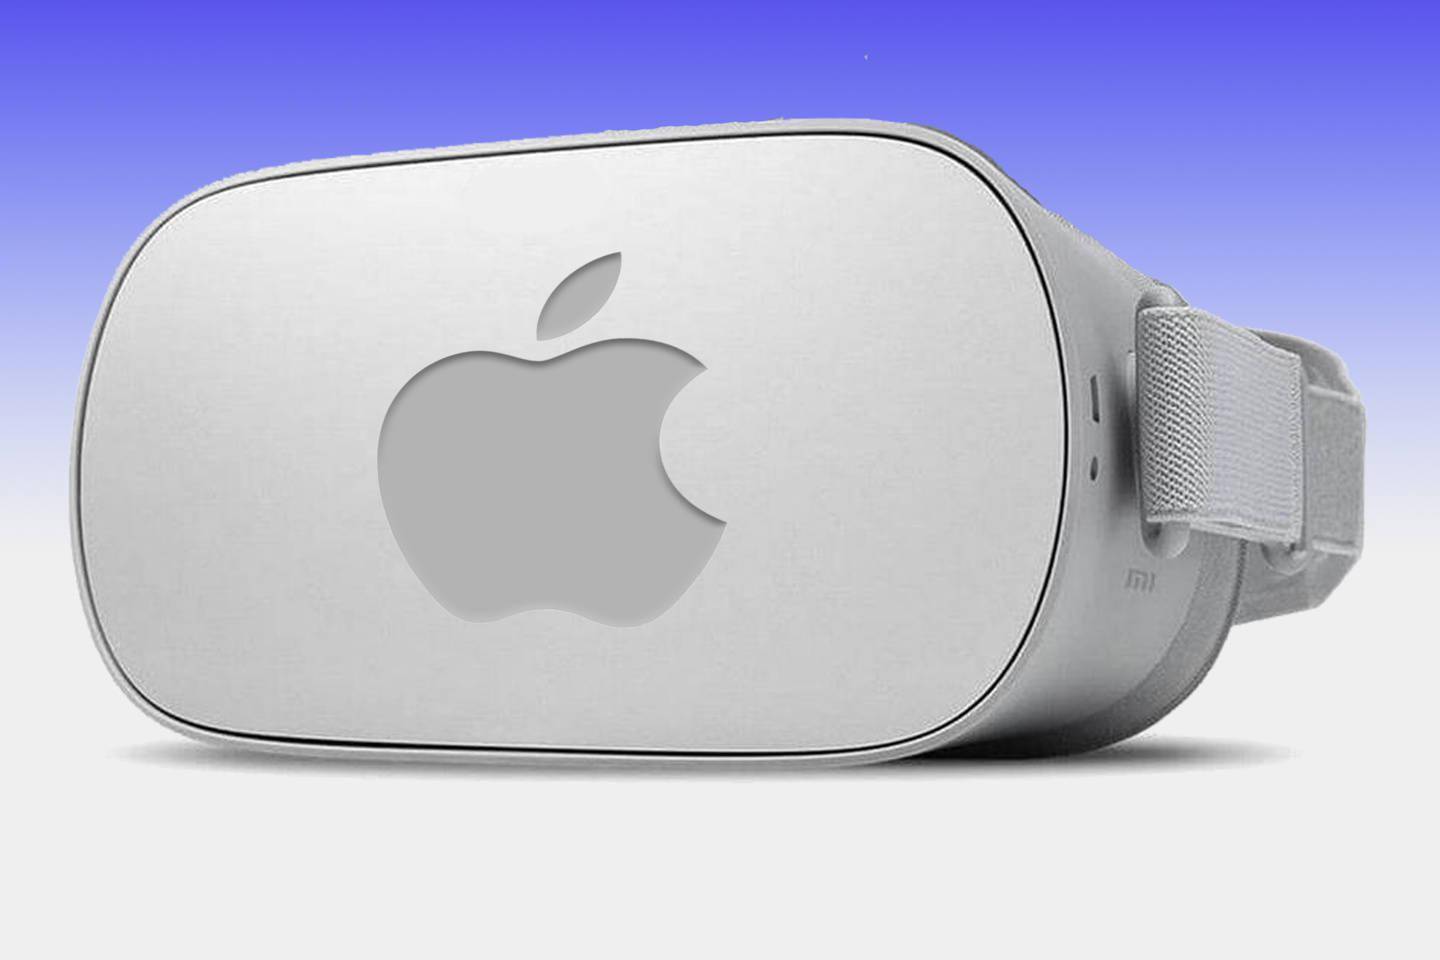 消息称苹果Reality Pro头显与公司最初愿景相去甚远 高管对其潜力持怀疑态度